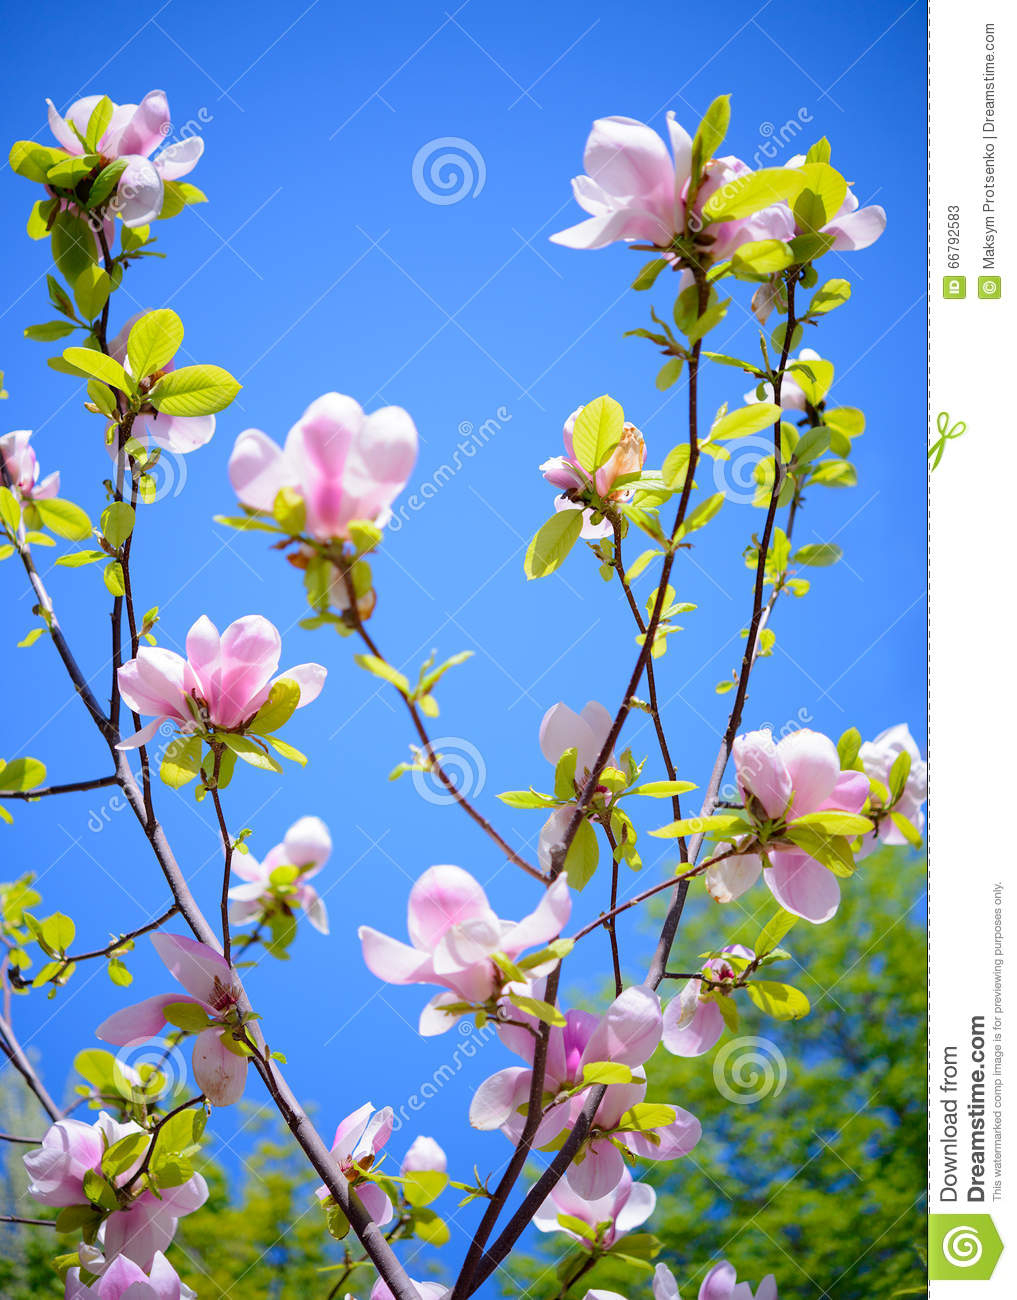 Schöne Rosa Magnolien-Blumen Auf Blauer Himmel-Hintergrund bei Blumenbild Kostenlos